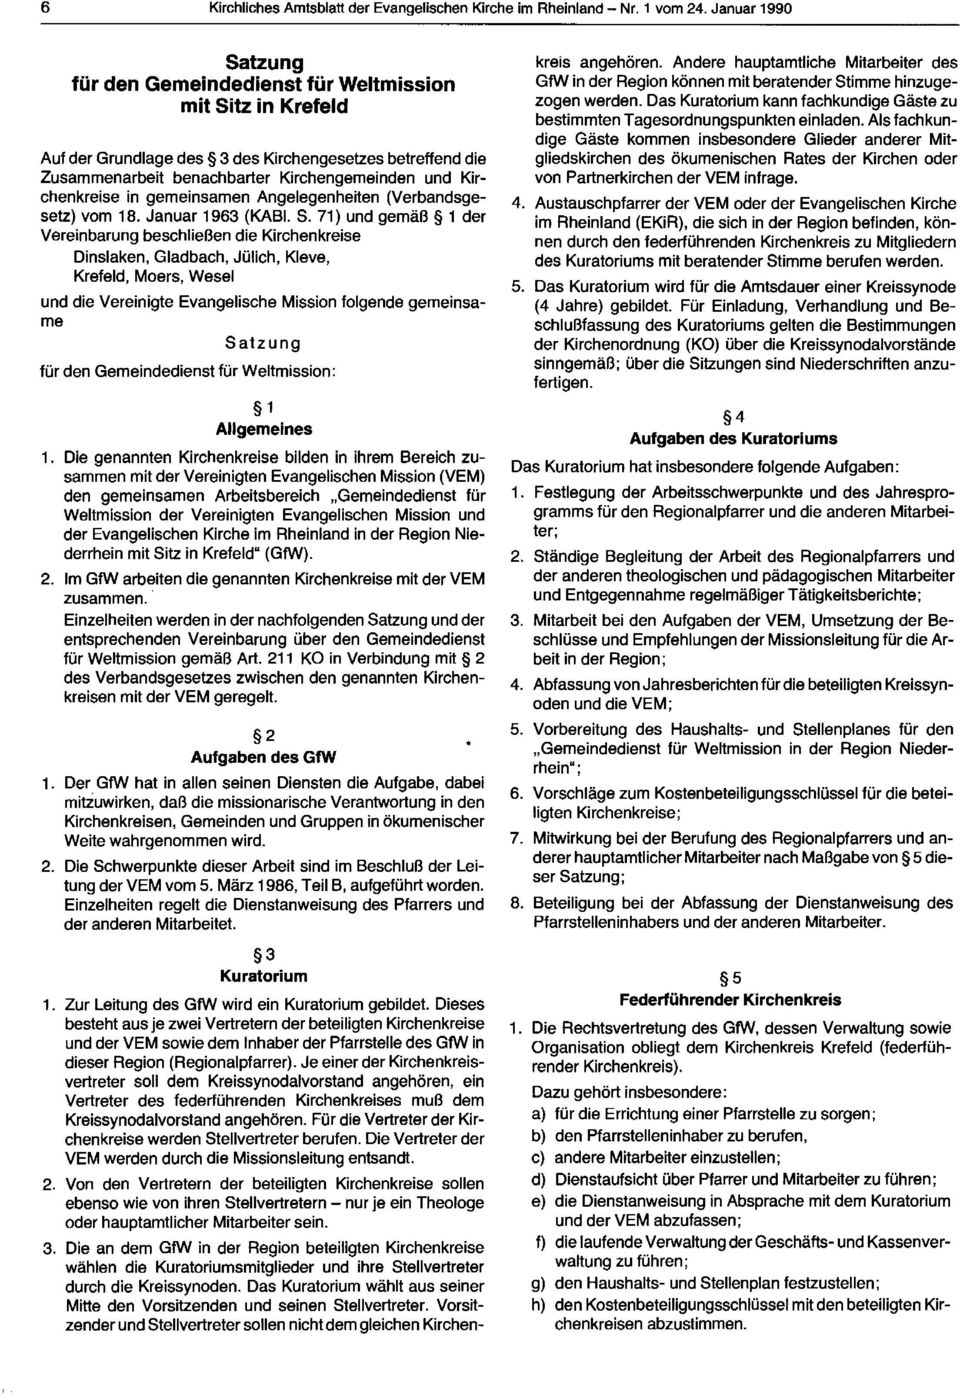 Kirchenkreise in gemeinsamen Angelegenheiten (Verbandsgesetz) vom 18. Januar 1963 (KABI. S.